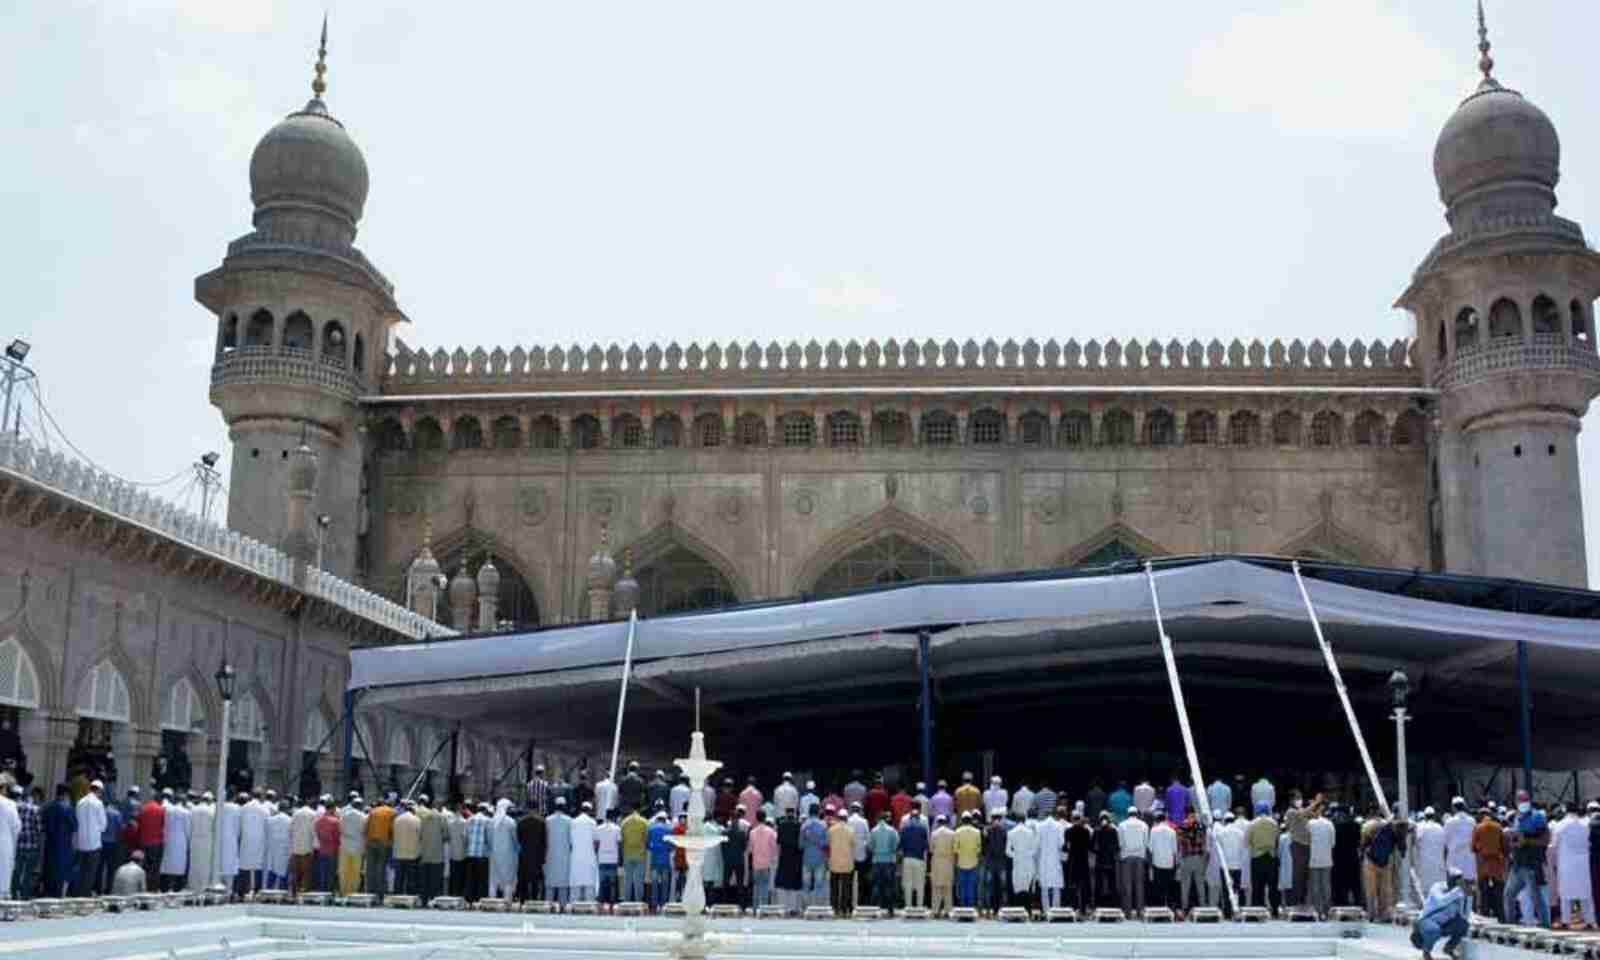 مجلس کے چارمینار رکن اسمبلی نے مکہ مسجد میں جاری ماہ رمضان کے کاموں کا لیا جائزہ 